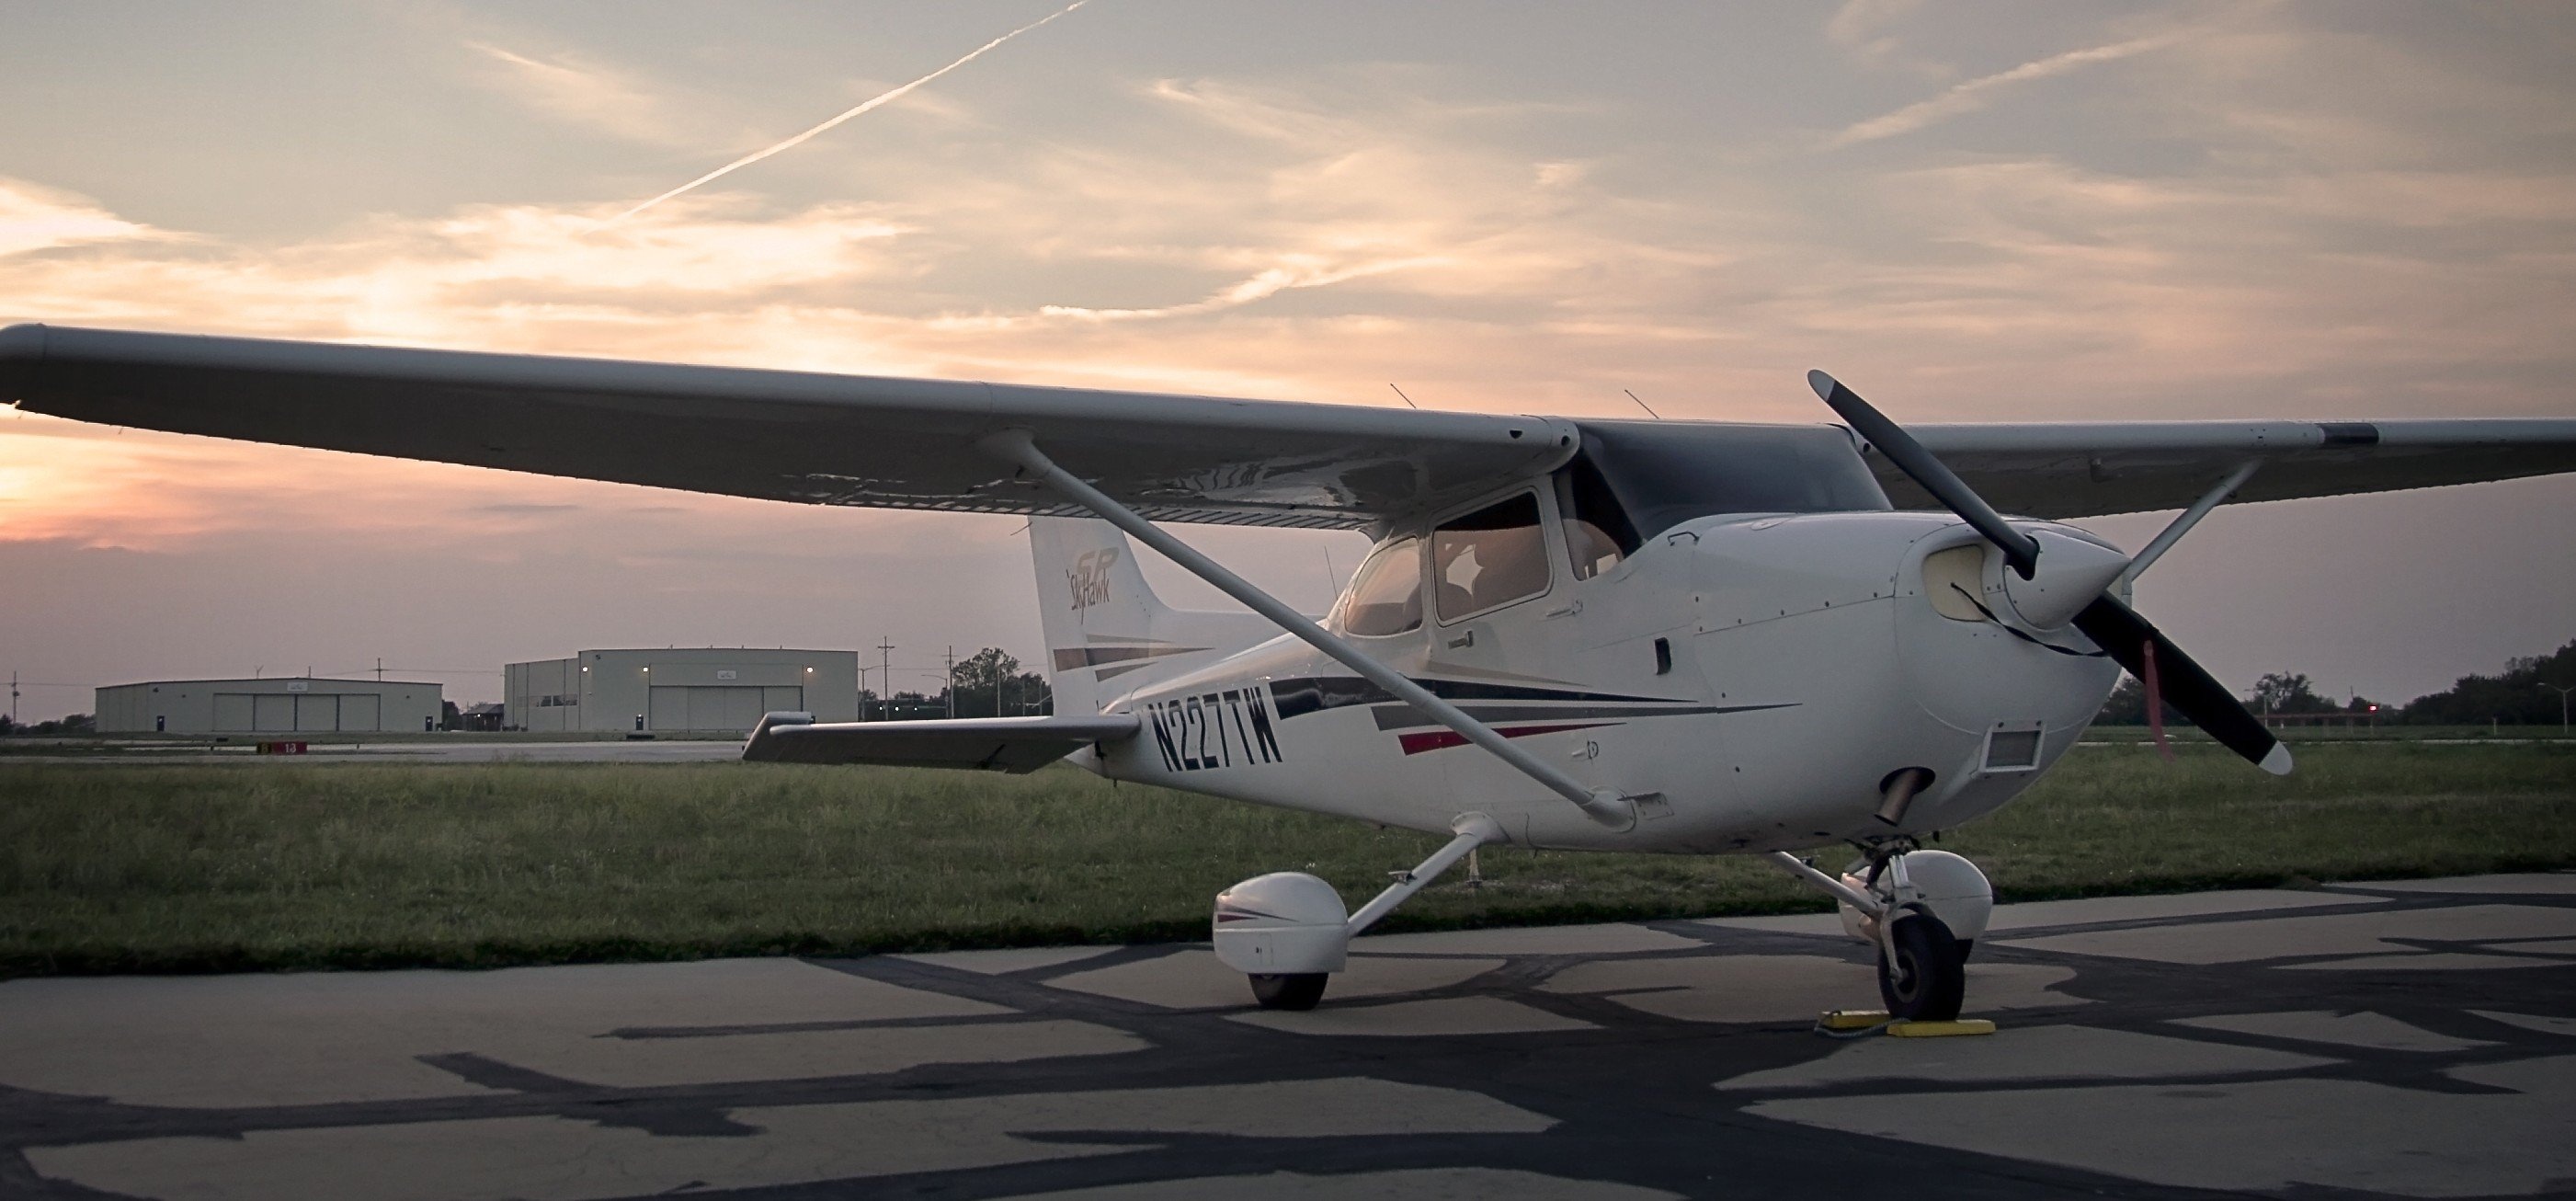 Cessna Aircraft Transport, Aviation Excellence, Dynamic Flight, Wallpaper Design, 2810x1310 Dual Screen Desktop